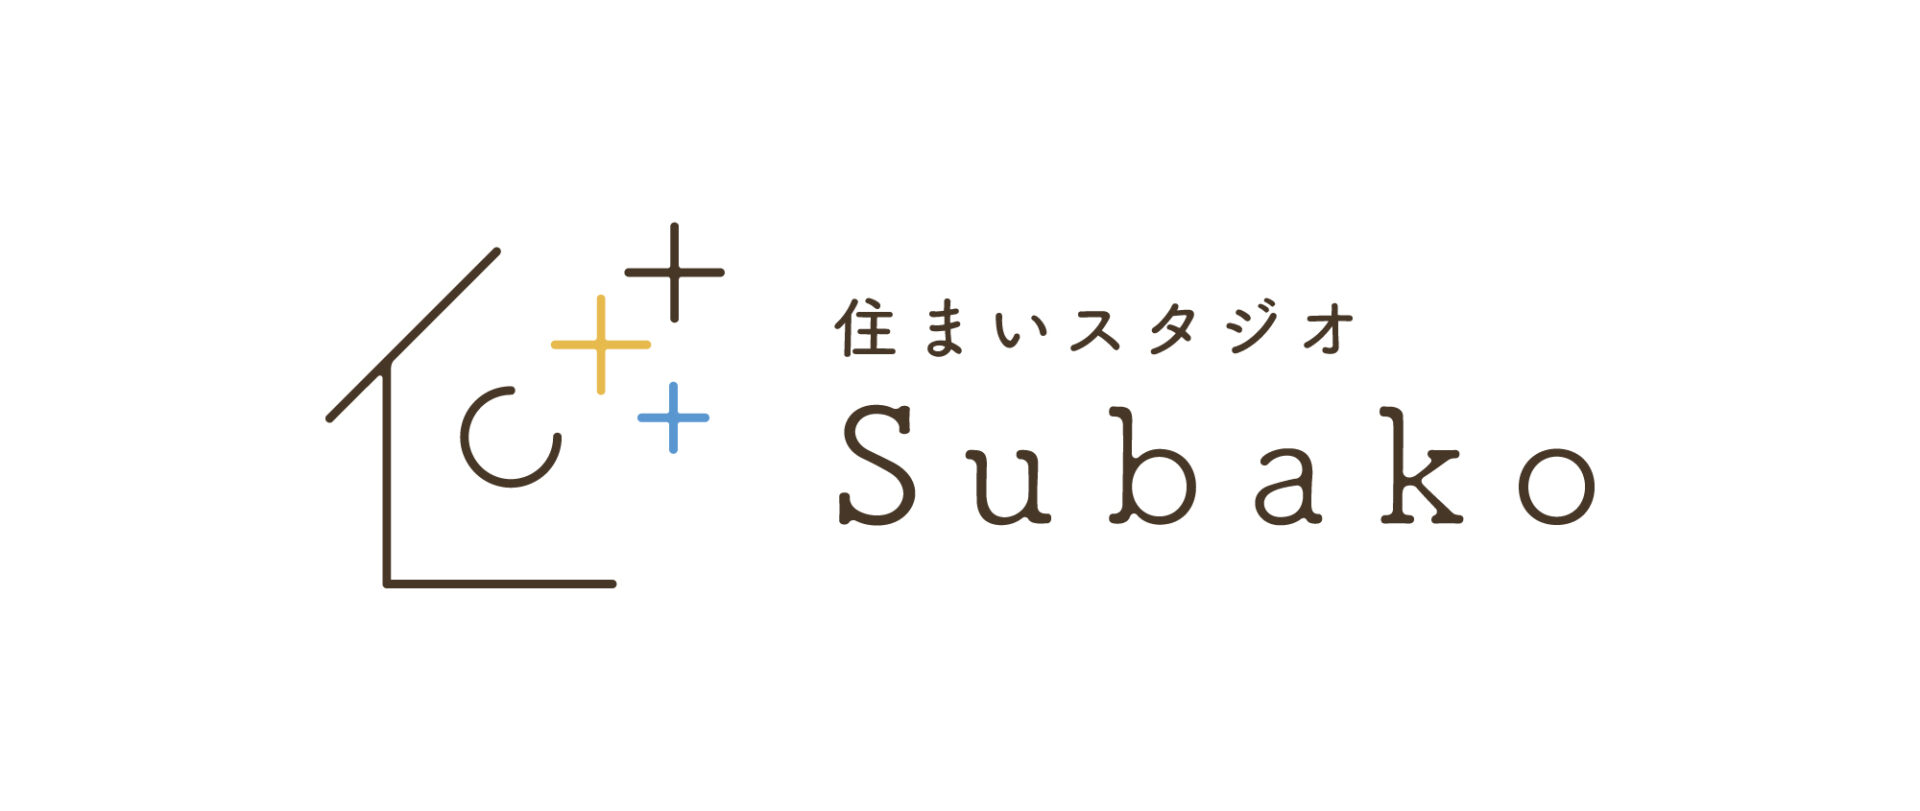 「住まいスタジオ Subako」で叶えたい地域の未来